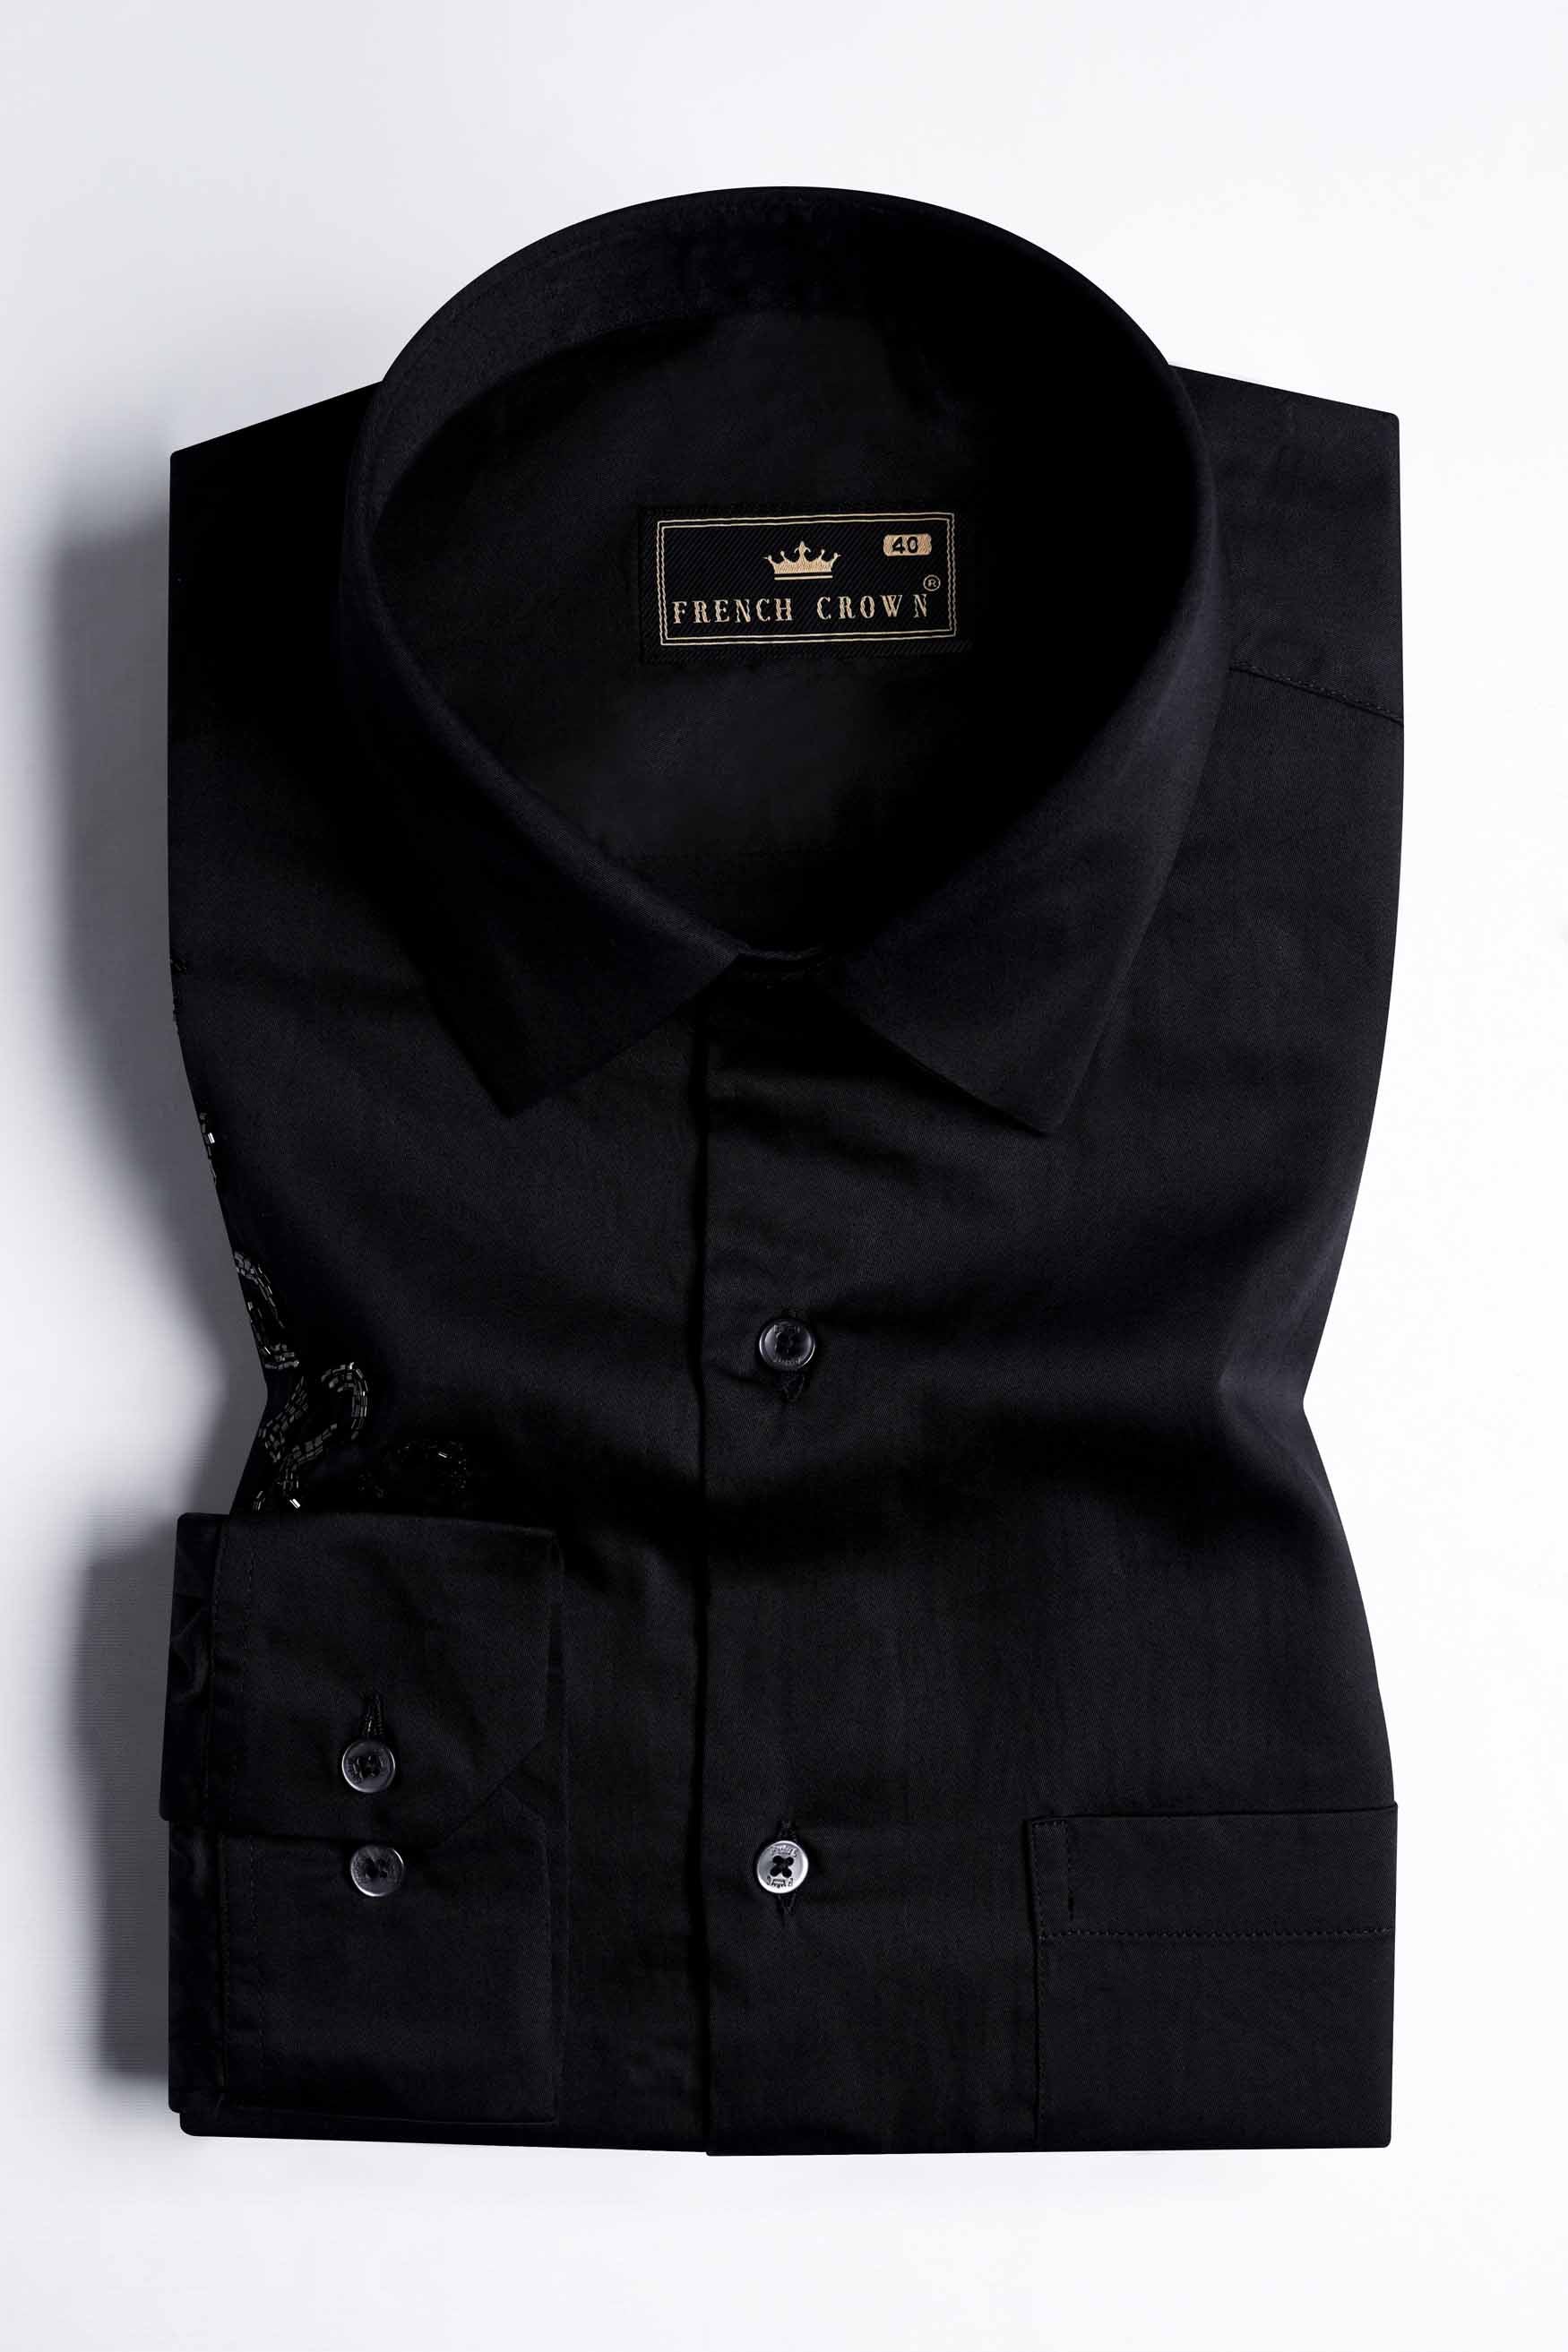 Jade Black Tikki Work Hand Stitched Subtle Sheen Super Soft Premium Cotton Designer Shirt 11536-BLK-E282-38, 11536-BLK-E282-H-38, 11536-BLK-E282-39, 11536-BLK-E282-H-39, 11536-BLK-E282-40, 11536-BLK-E282-H-40, 11536-BLK-E282-42, 11536-BLK-E282-H-42, 11536-BLK-E282-44, 11536-BLK-E282-H-44, 11536-BLK-E282-46, 11536-BLK-E282-H-46, 11536-BLK-E282-48, 11536-BLK-E282-H-48, 11536-BLK-E282-50, 11536-BLK-E282-H-50, 11536-BLK-E282-52, 11536-BLK-E282-H-52